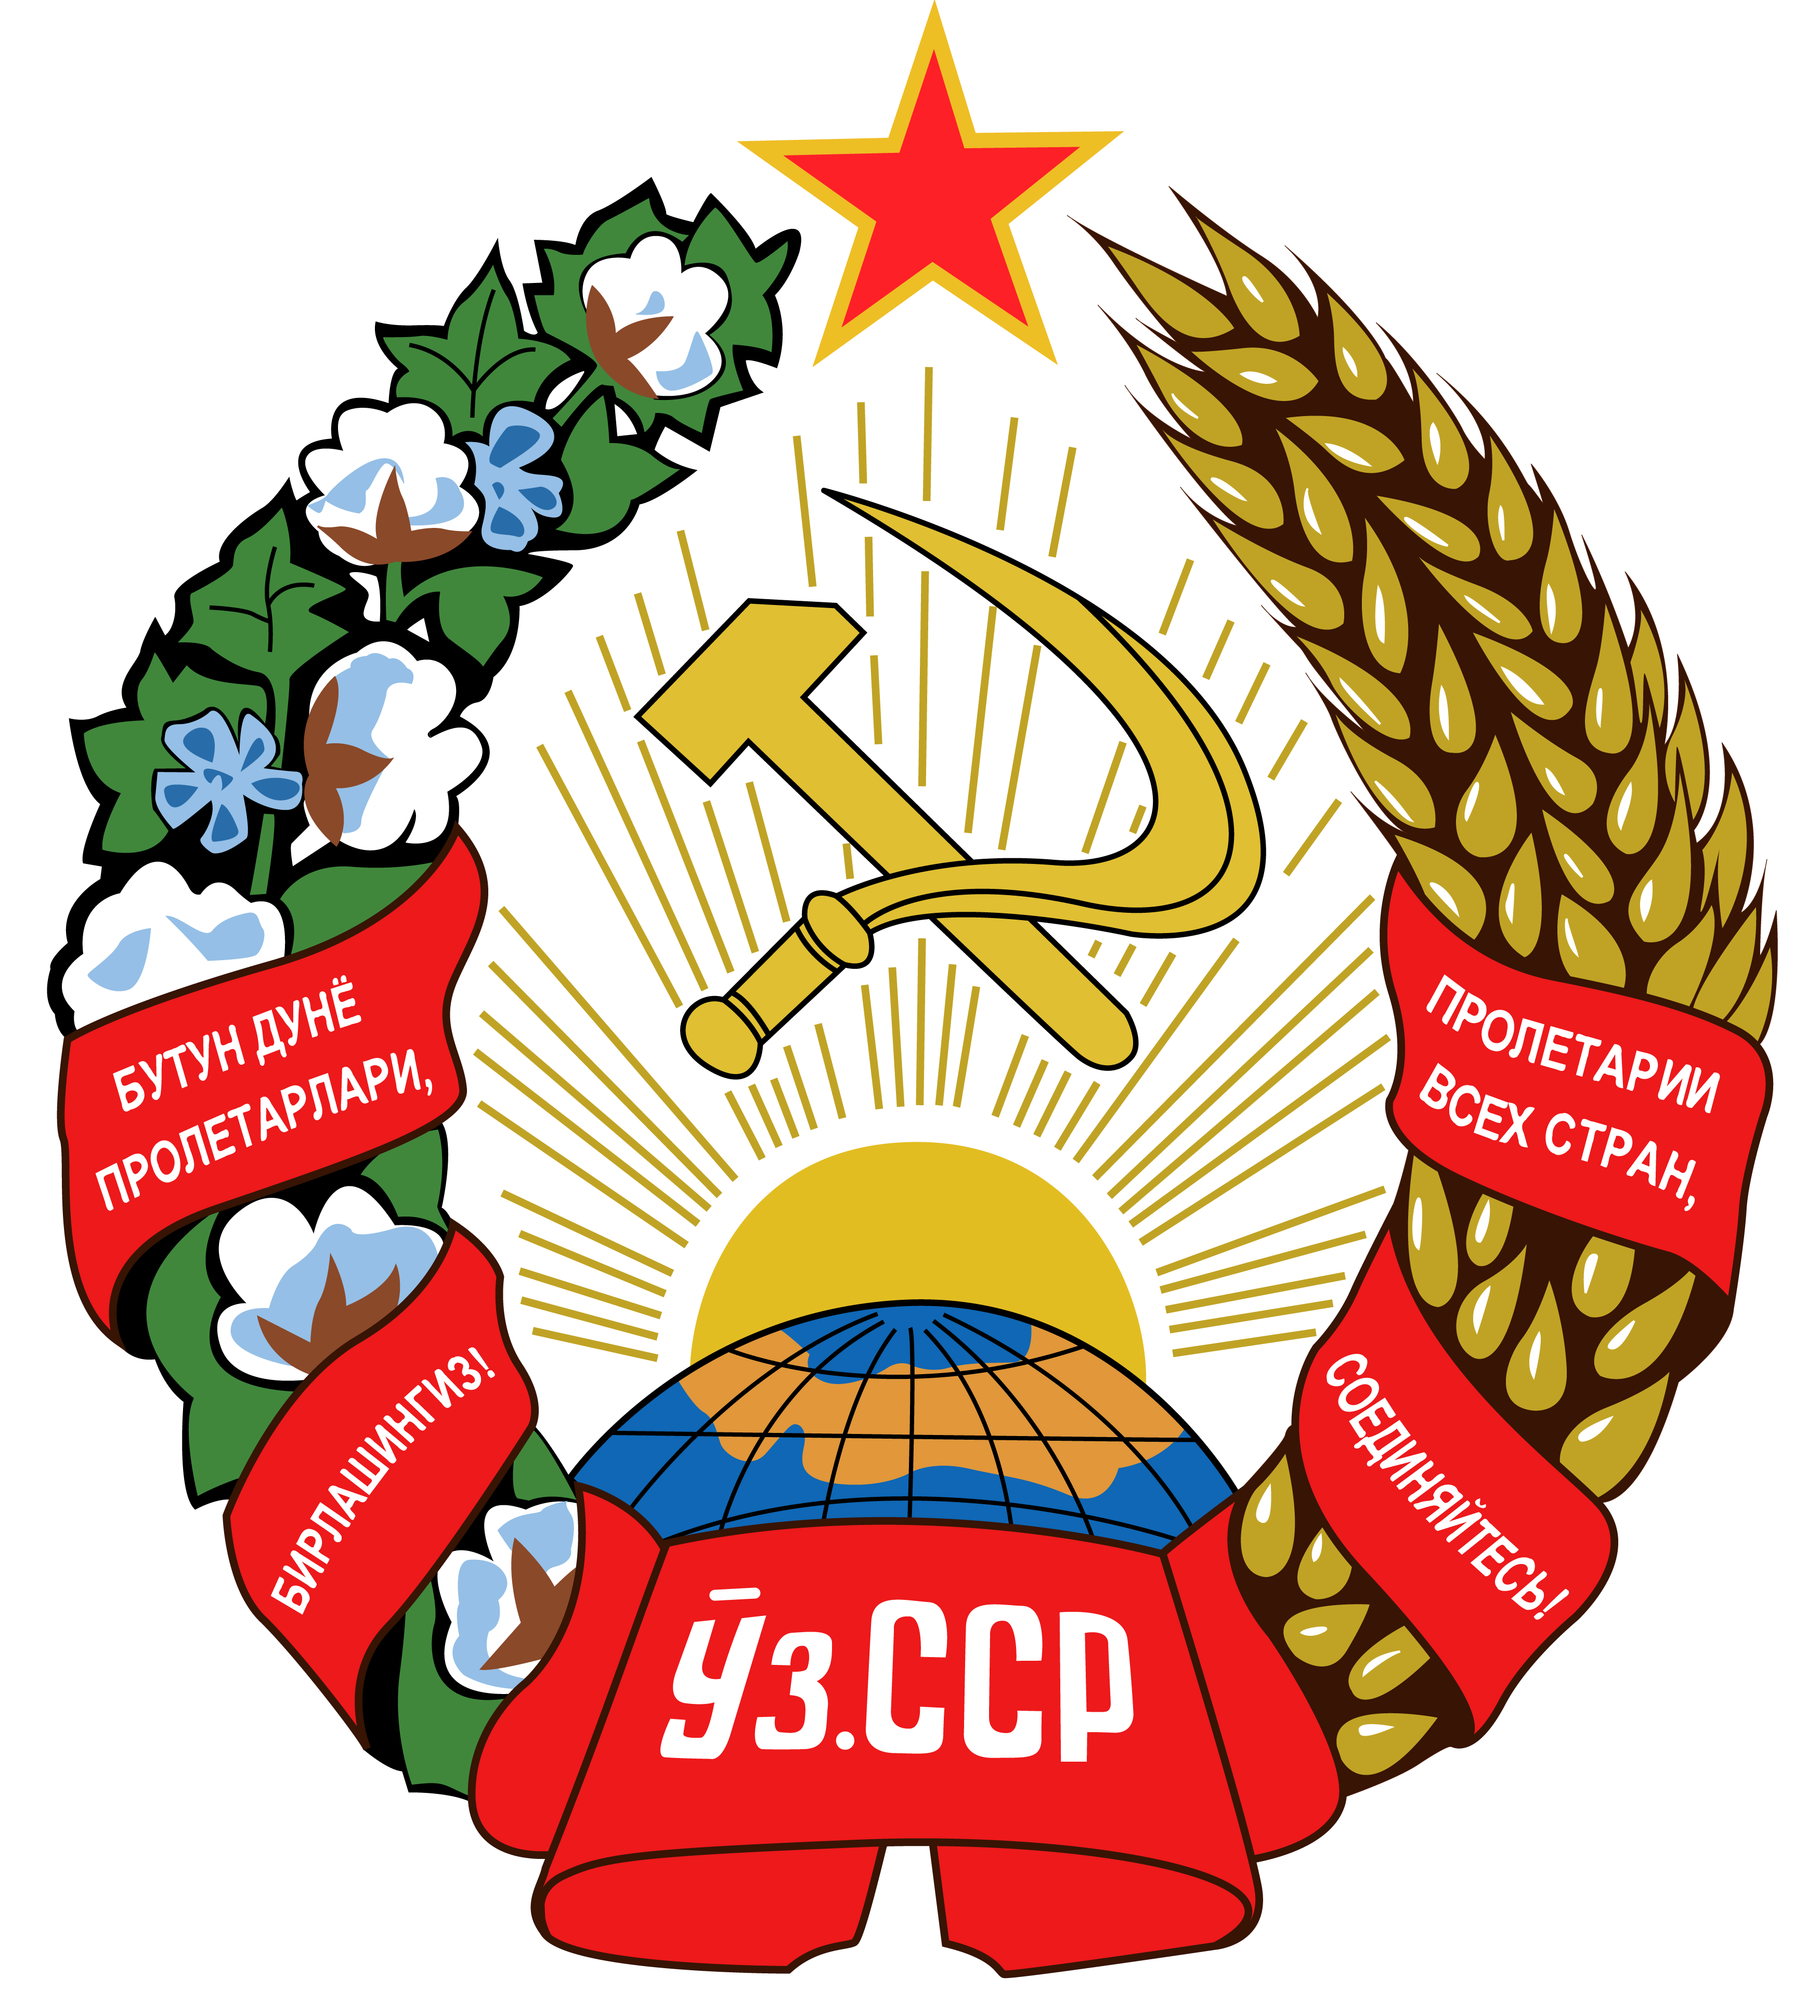 烏茲別克蘇聯時期國徽